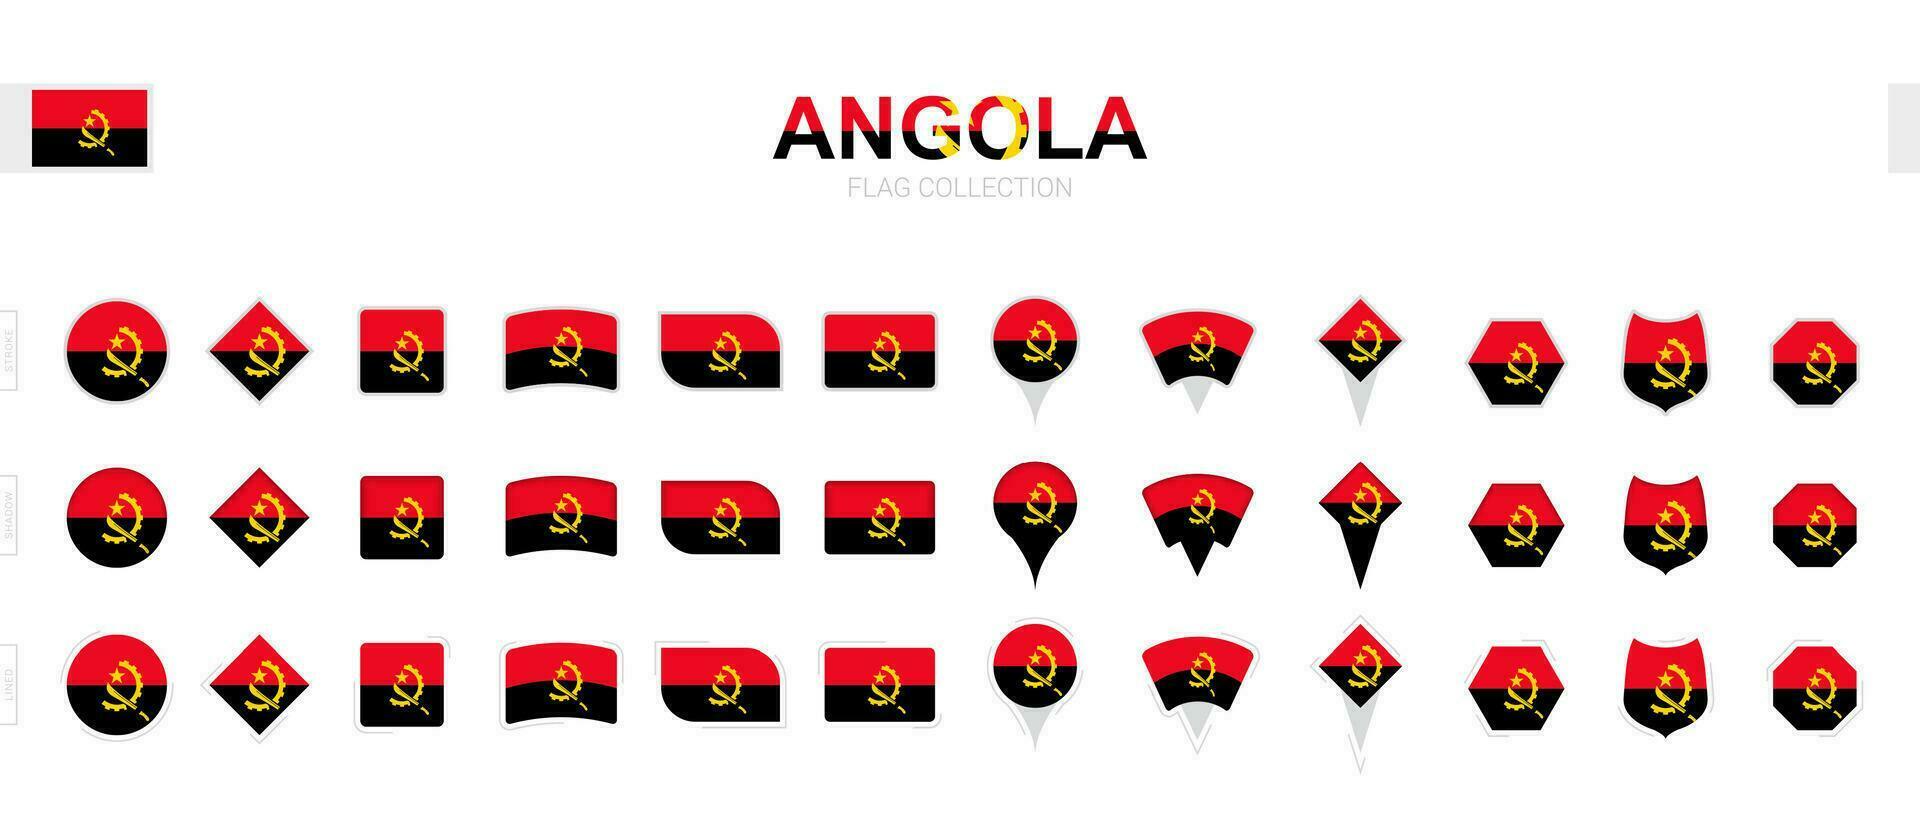 groß Sammlung von Angola Flaggen von verschiedene Formen und Auswirkungen. vektor